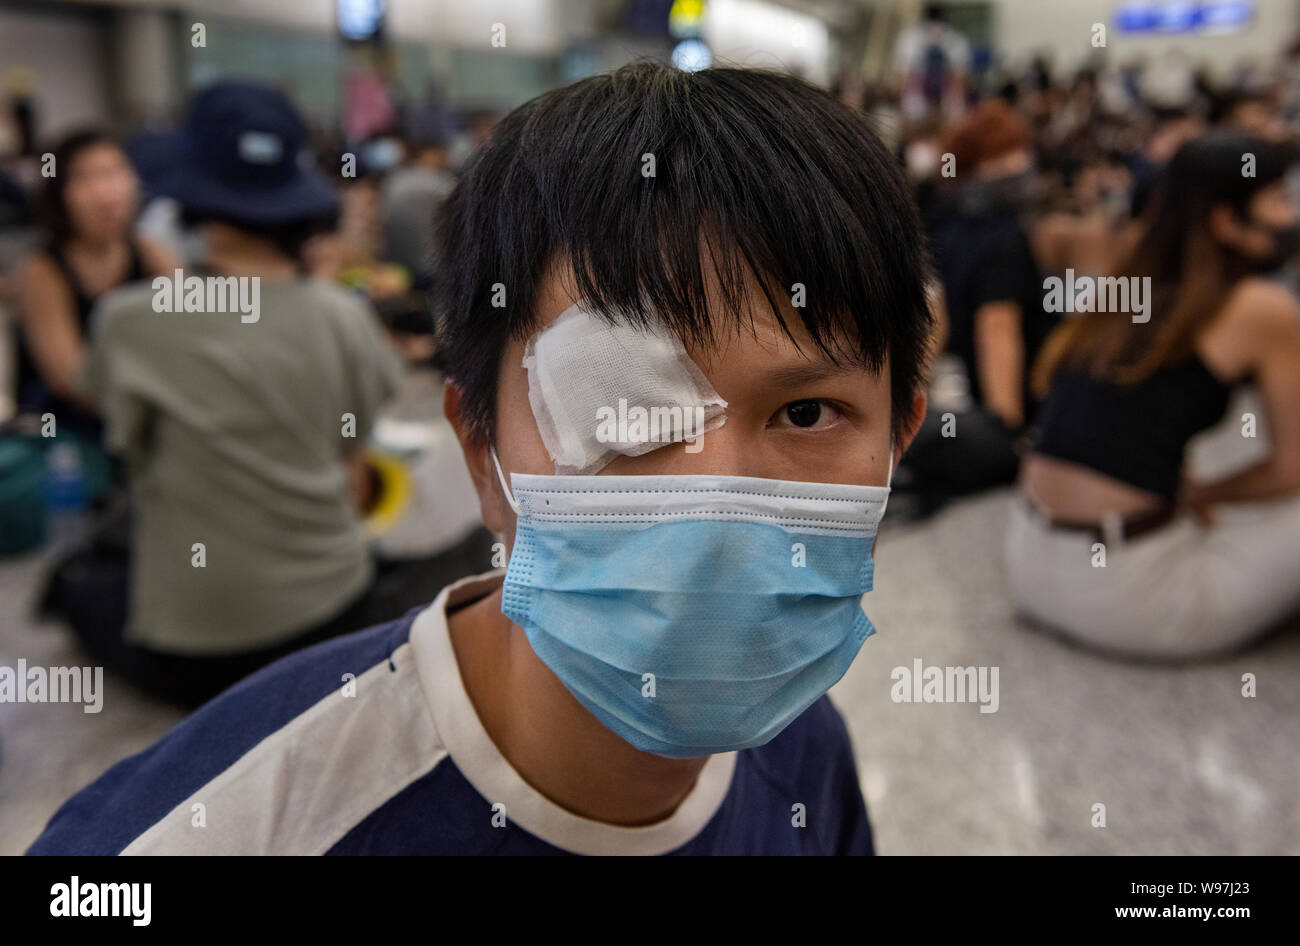 Porträt einer regierungsfeindlichen Demonstranten mit einer Augenklappe bei einem Sit-in demonstrant am Hong Kong International Airport. In Antwort vom Wochenende Gewalt, die eine Frau in die Augen, mit einem Projektil während der Auseinandersetzungen zwischen Demonstranten und der Polizei erschossen wurde, regierungsfeindlichen Demonstranten besetzten Hong Kong International Airport und zwang die Annullierung von Flügen. Stockfoto